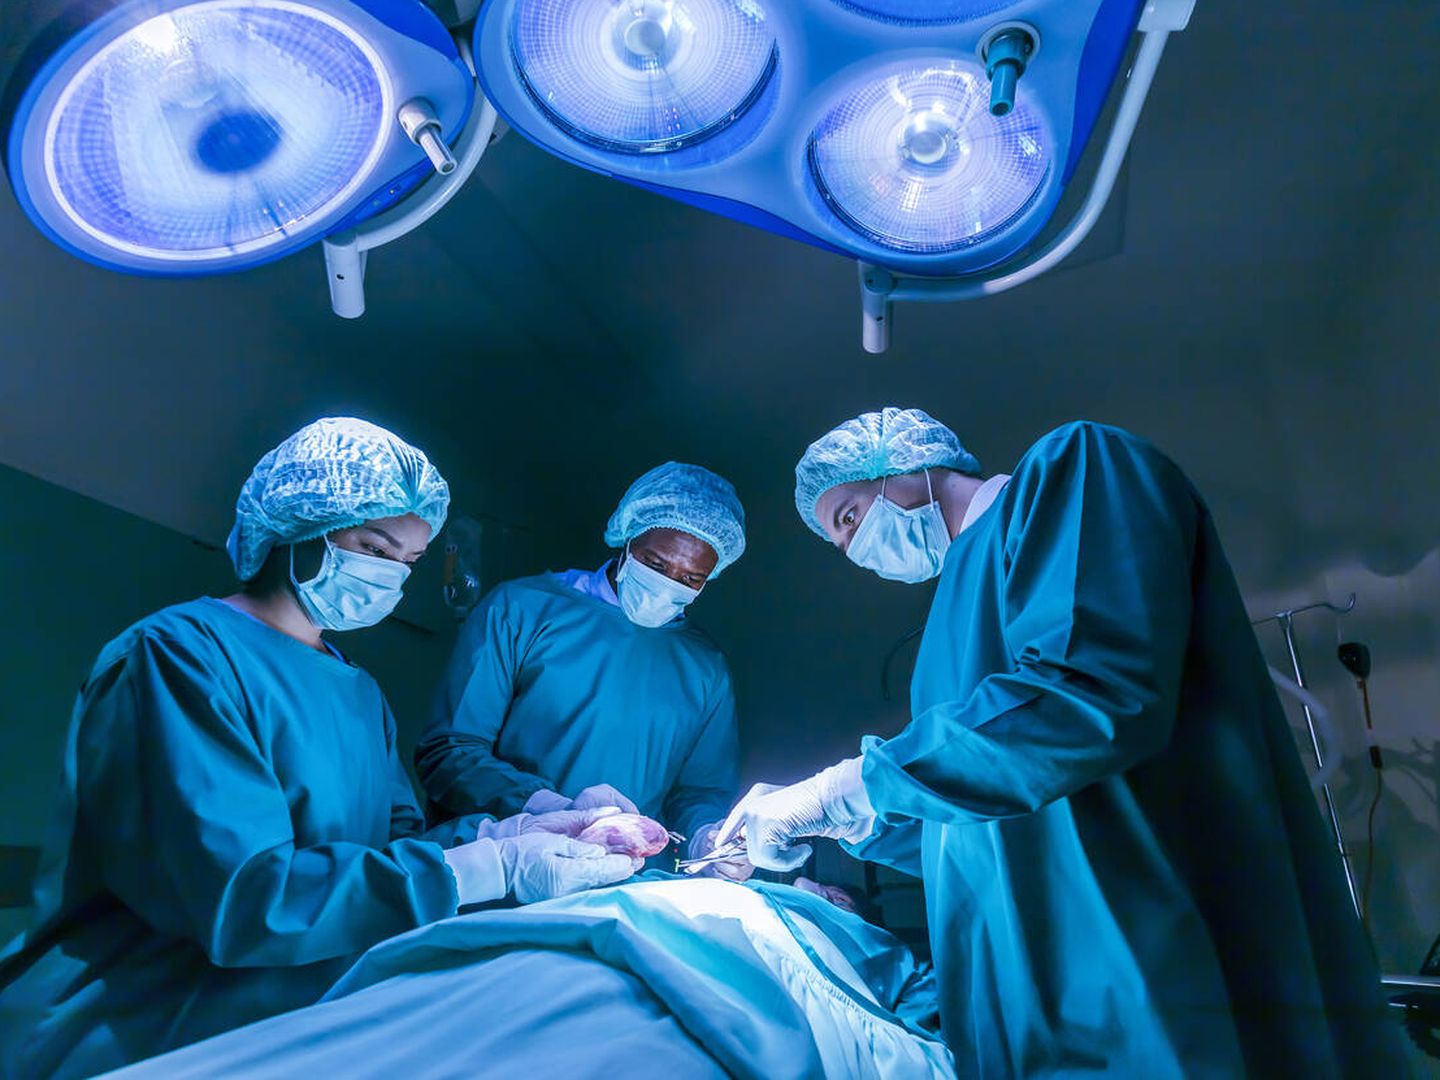 Los médicos realizan un trasplante en el quirófano. (iStock)